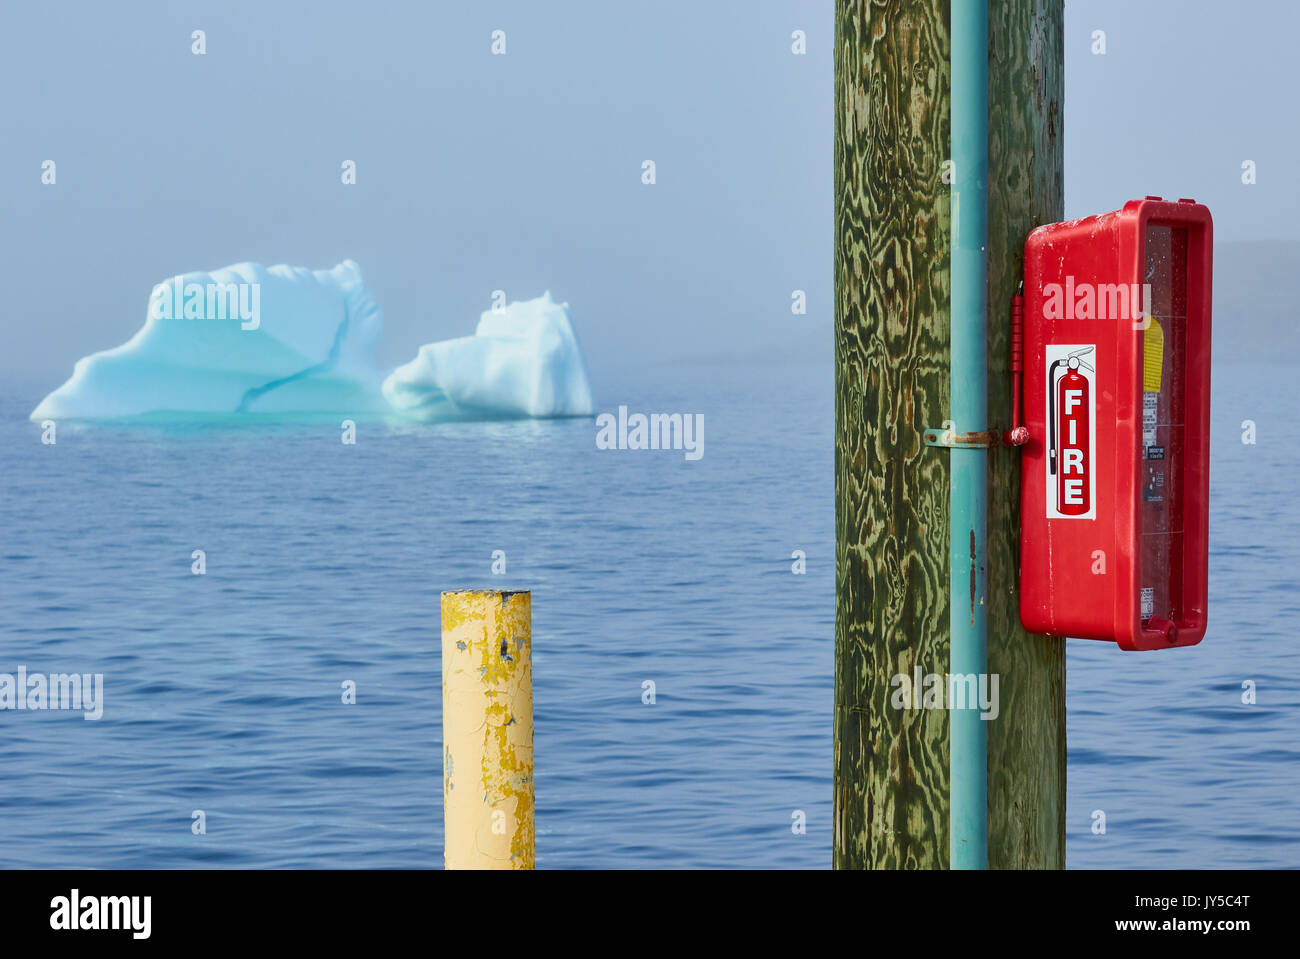 Iceberg et extincteur contraste, St Lunaire Griquet une communauté à l'extrémité de la péninsule Great Northern, à Terre-Neuve, Canada Banque D'Images